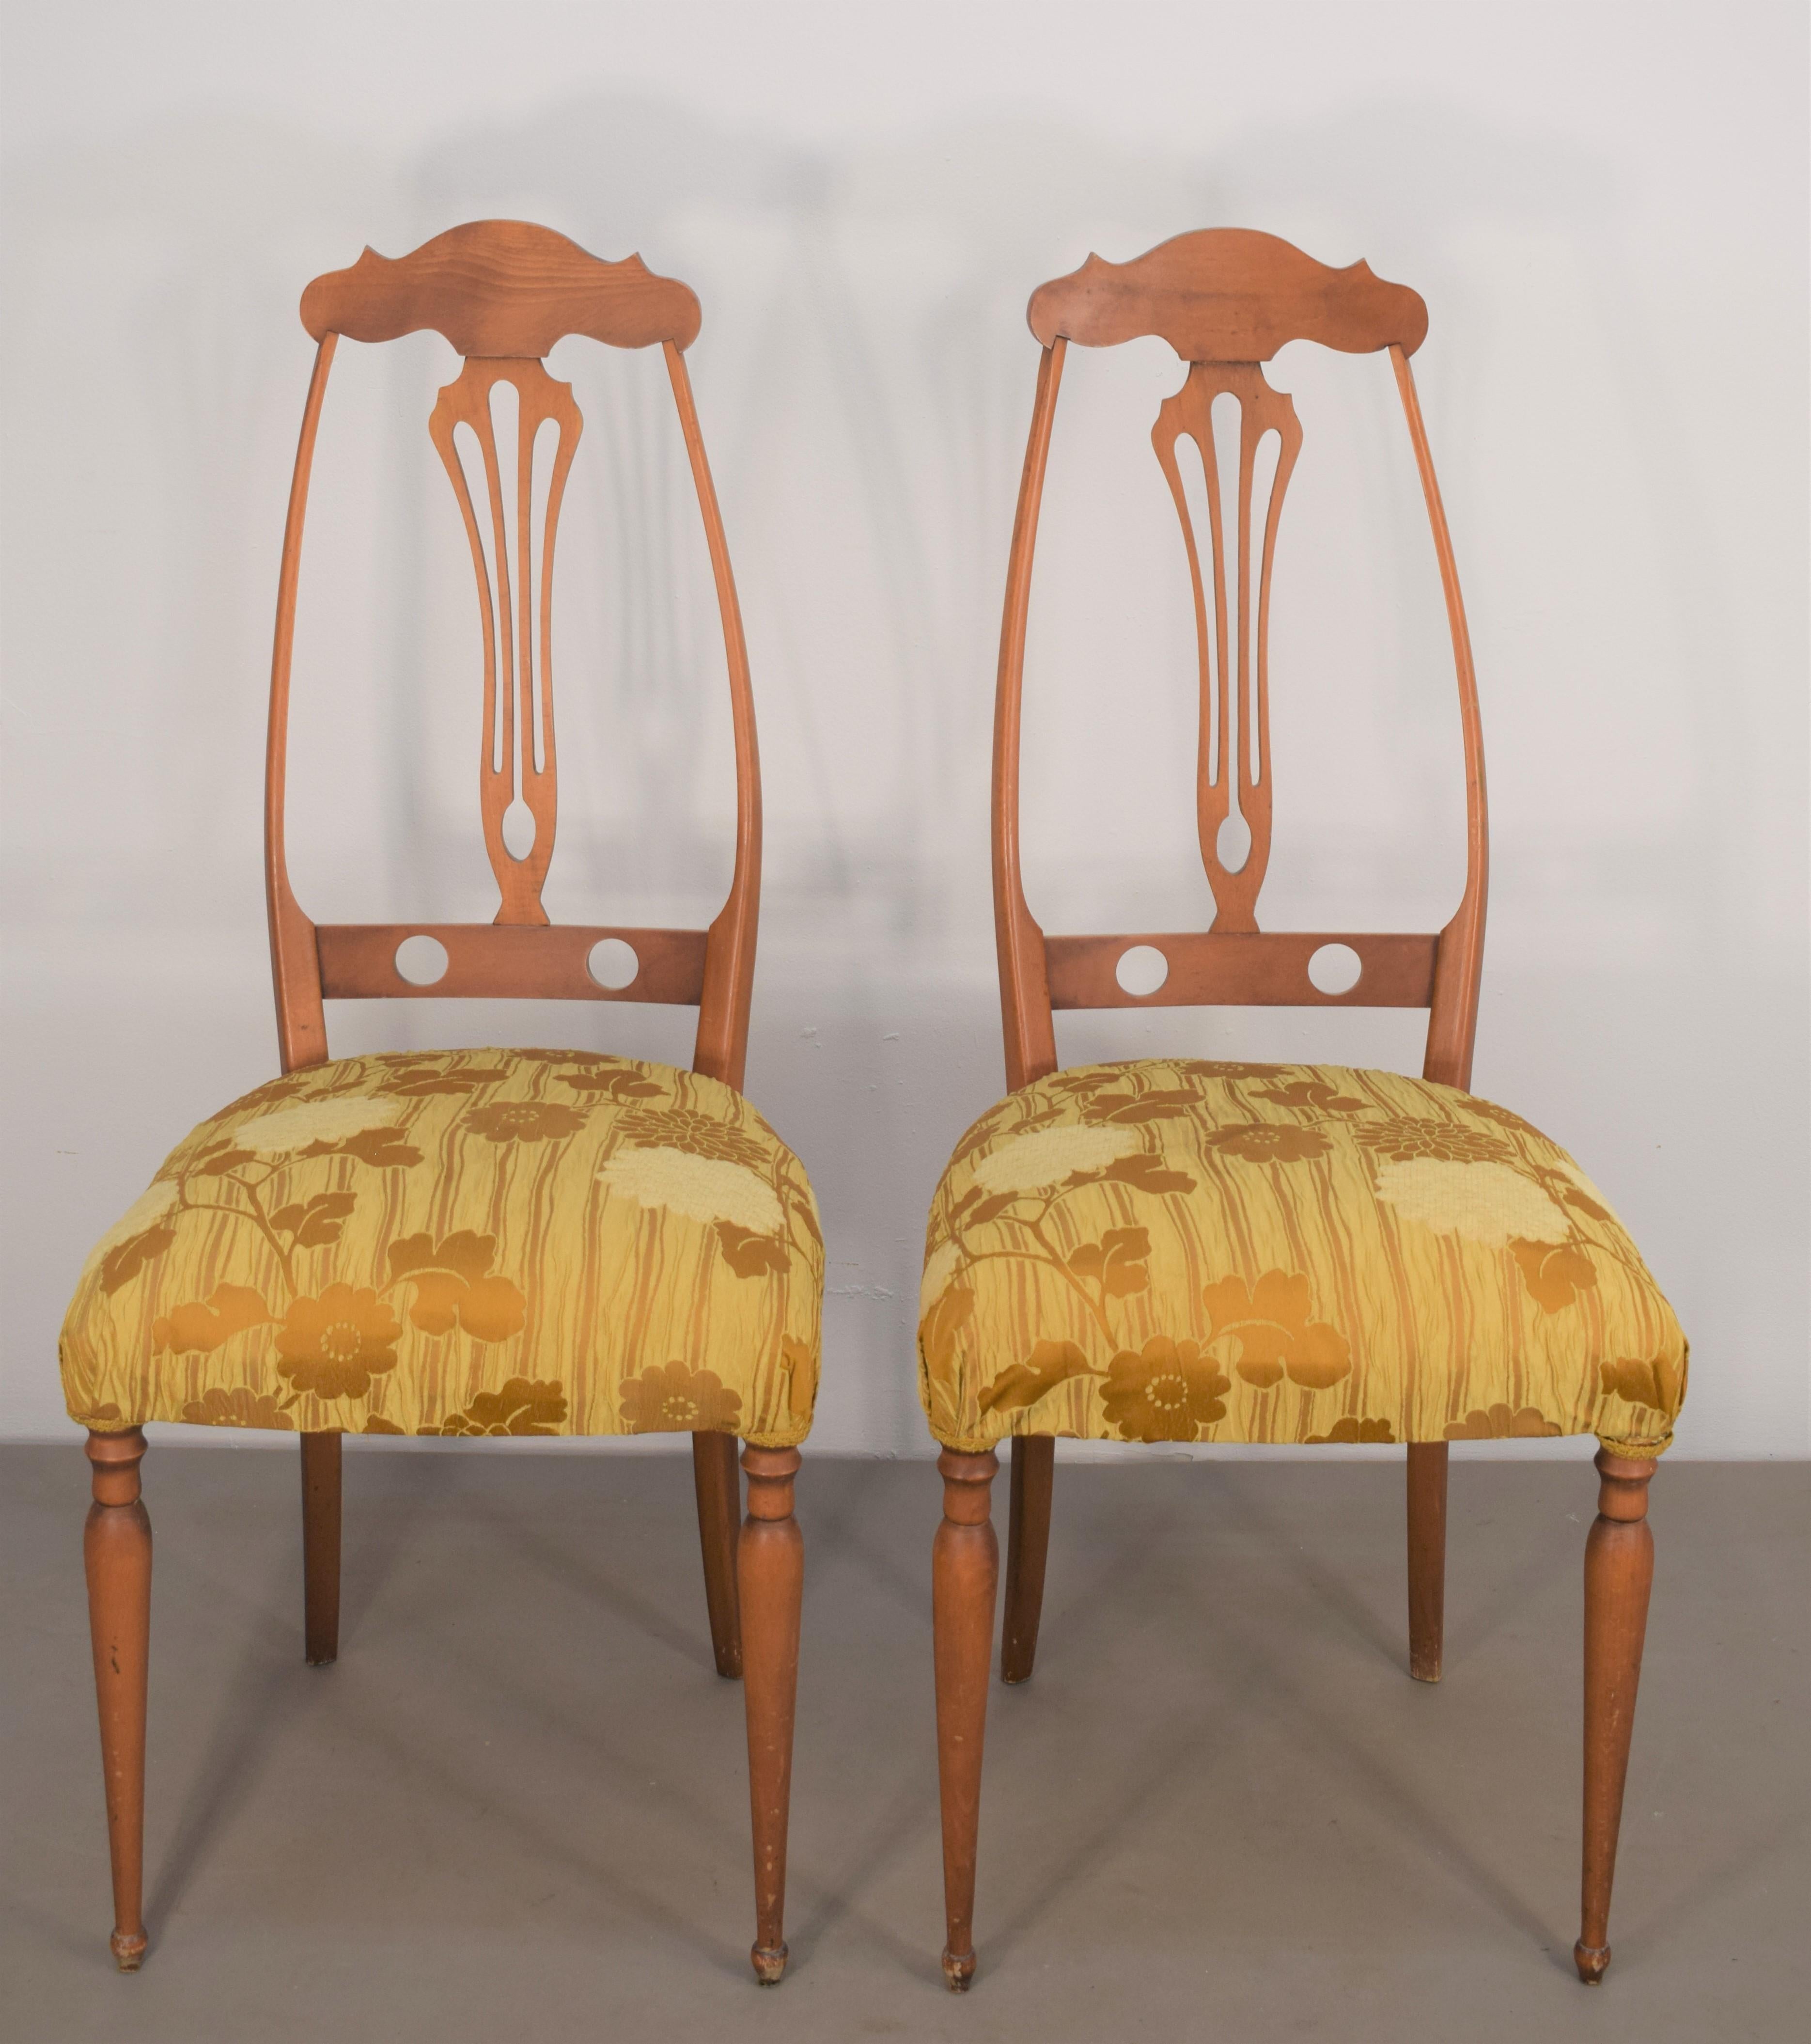 Paire de chaises italiennes par Pozzi & Verga, années 1950.

Dimensions : H= 101 cm ; L= 44 cm ; P=42 cm ; H siège= 48 cm.